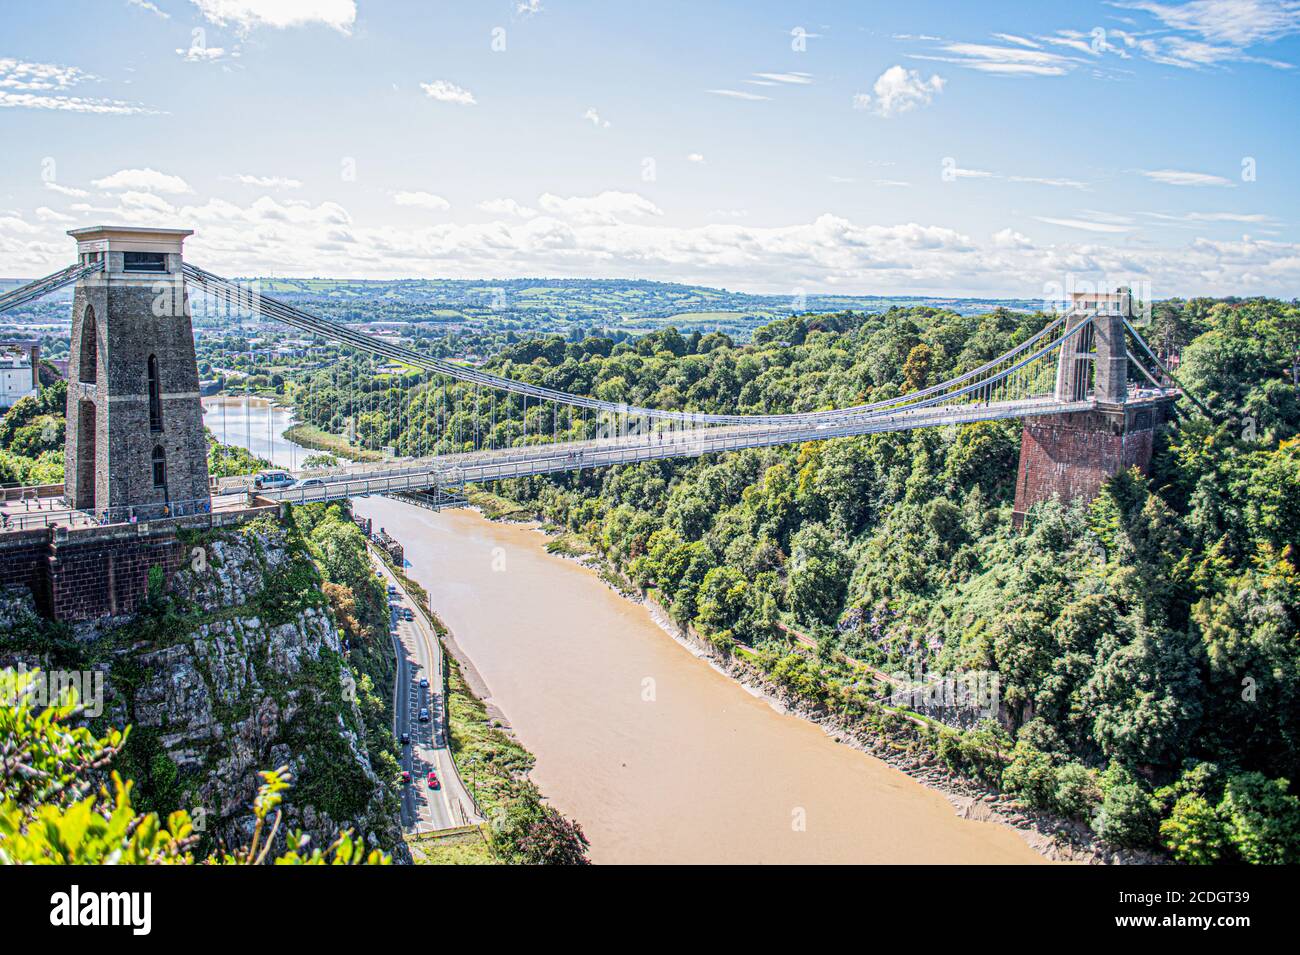 Bristol suspension bridge Stock Photo